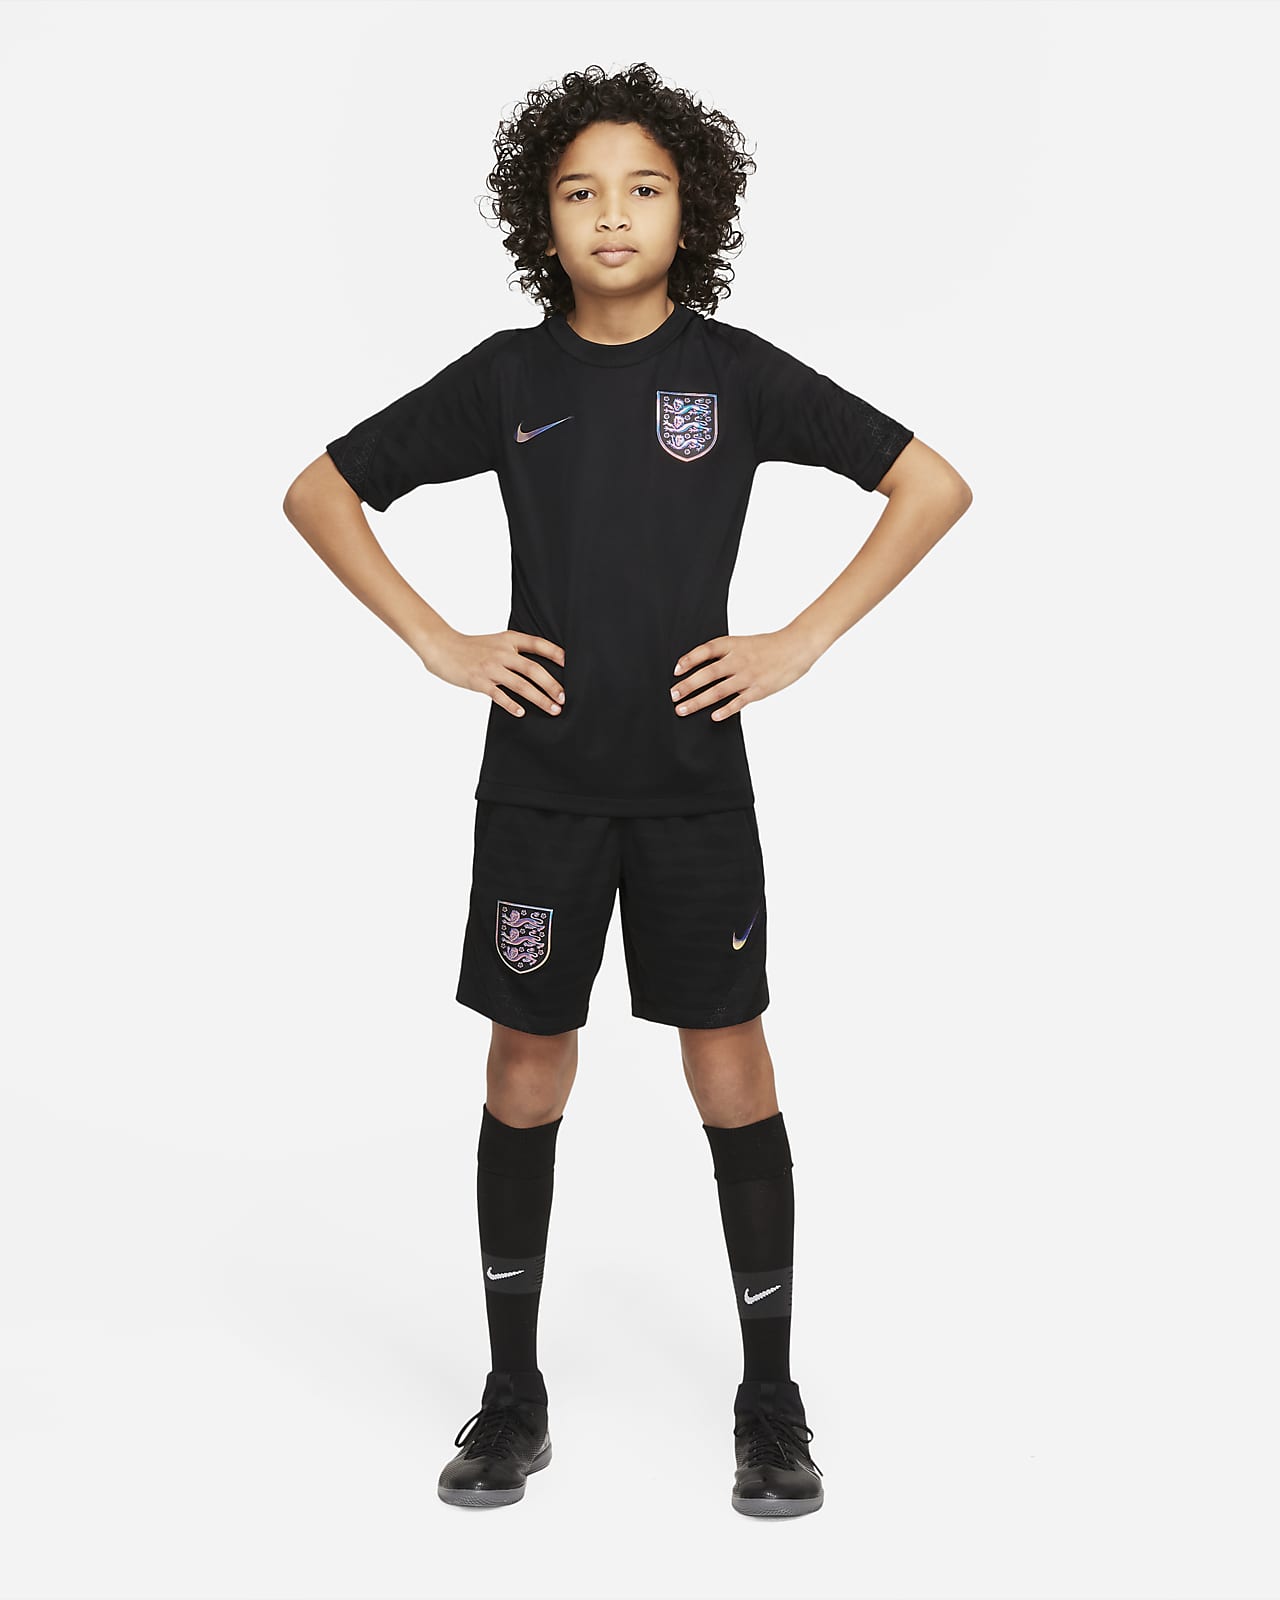 Fútbol · Nike · Niños · Deportes · El Corte Inglés (32)